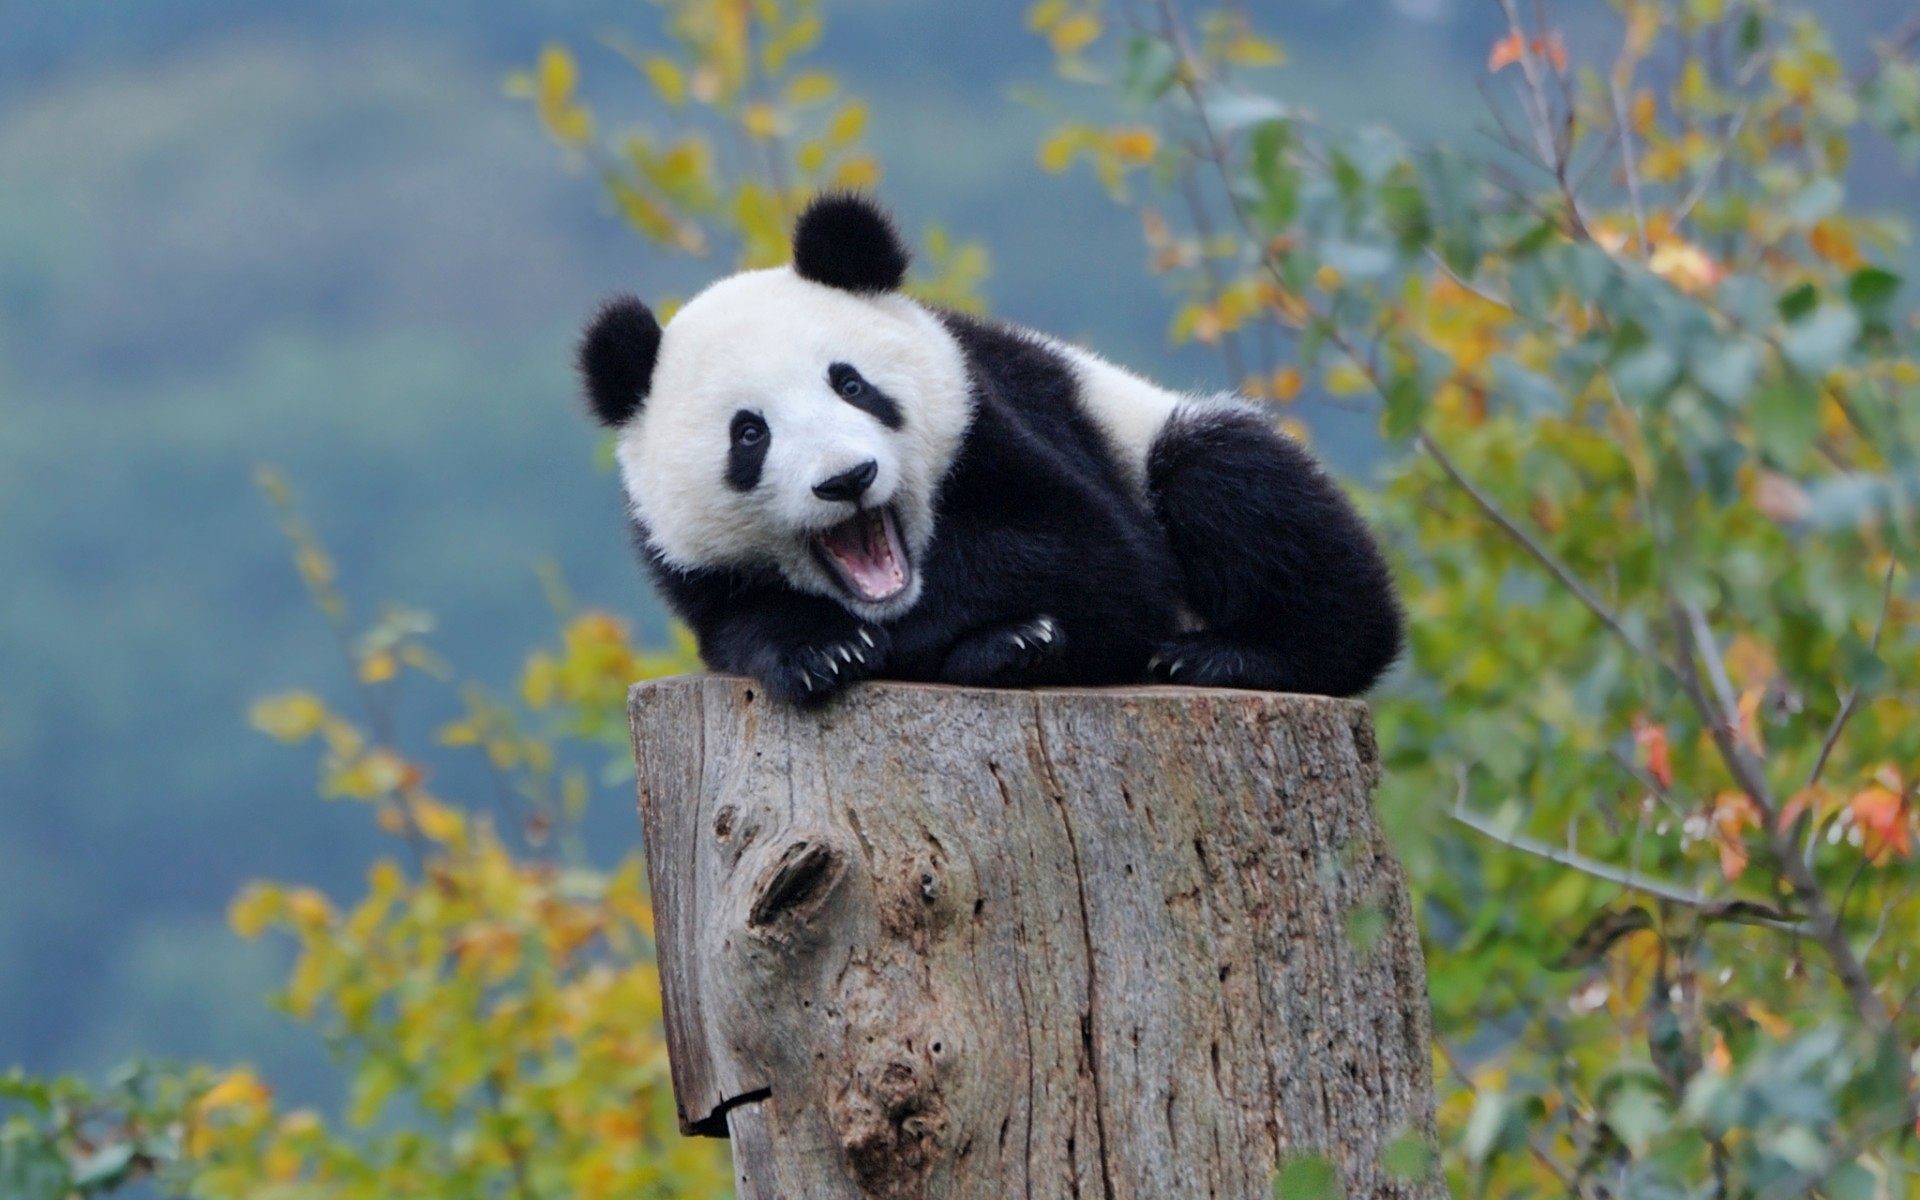 Cute Panda Wallpaper , Full HD 1080p, Best